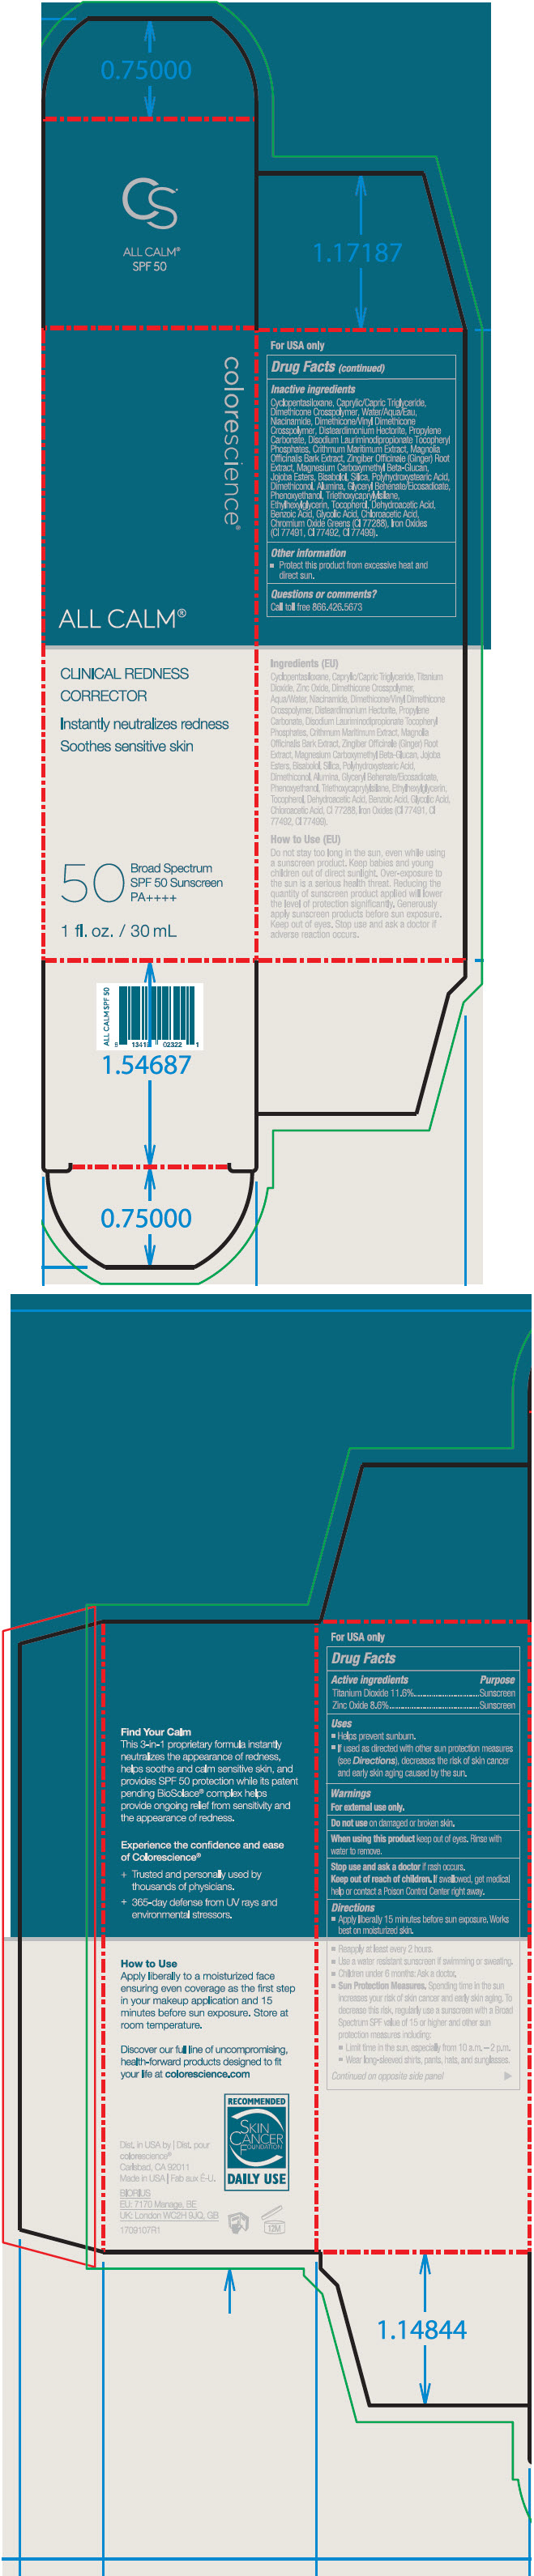 PRINCIPAL DISPLAY PANEL - 30 mL Tube Carton